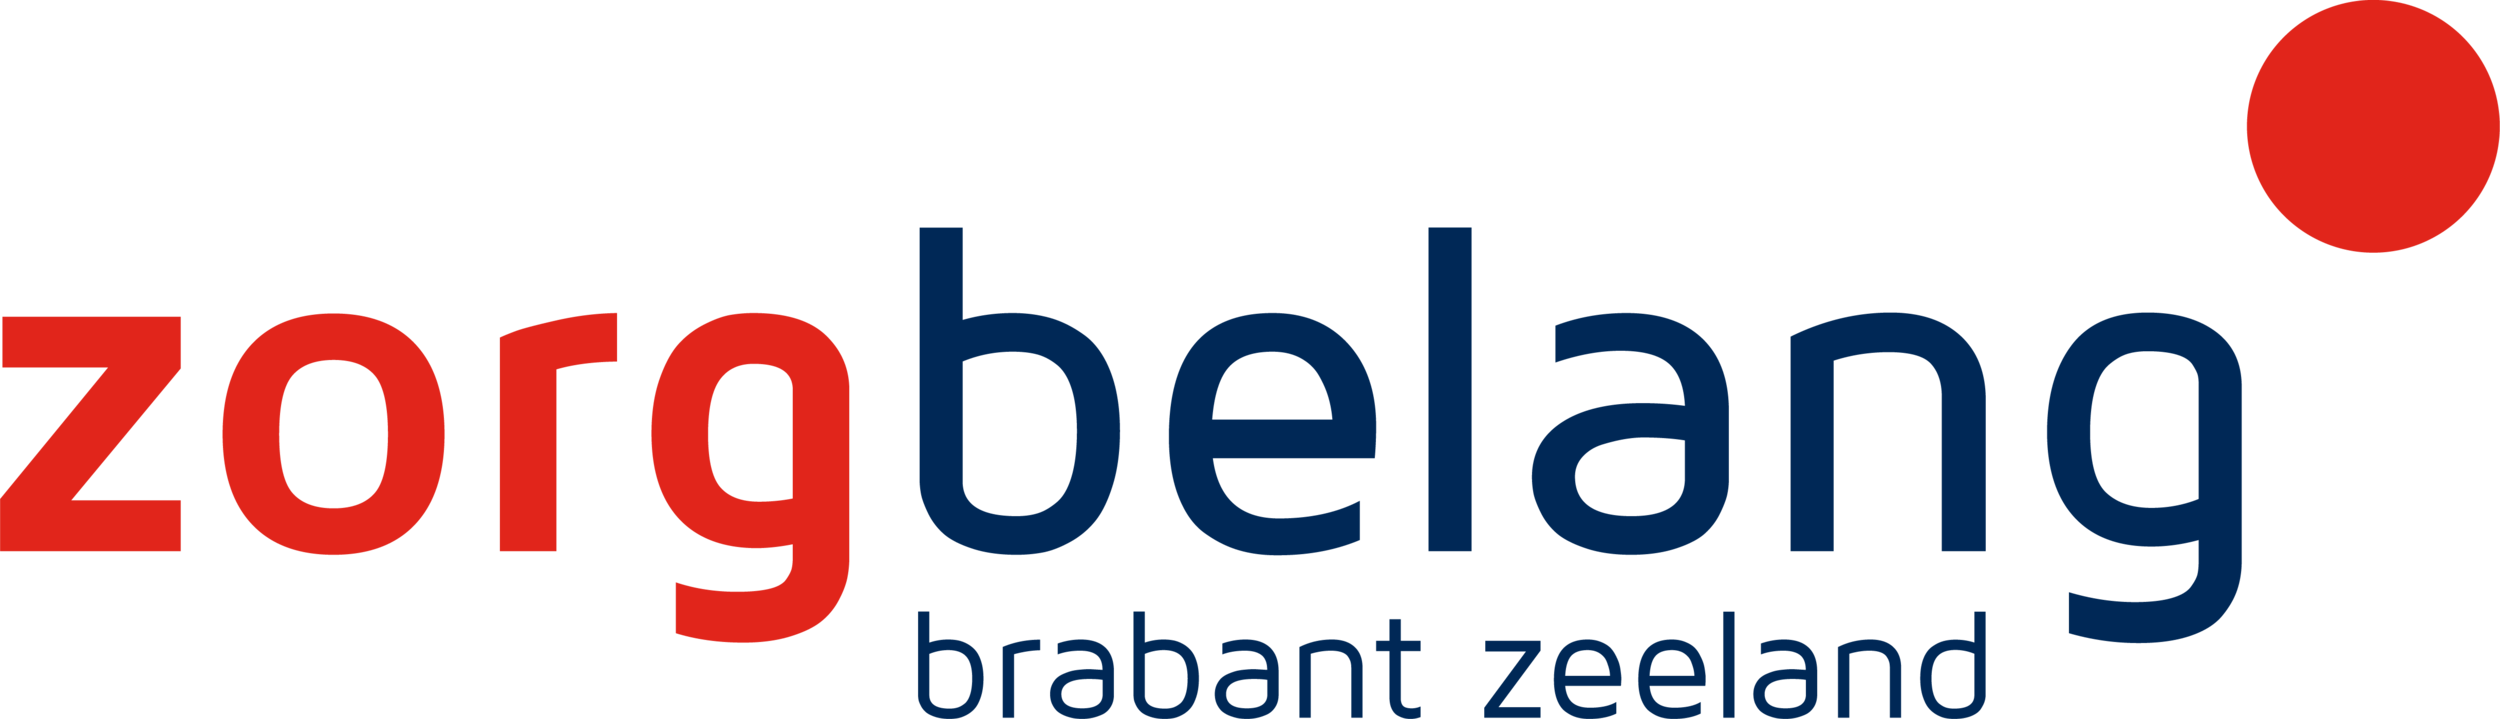 Zorgbelang logo rgb 202111.png